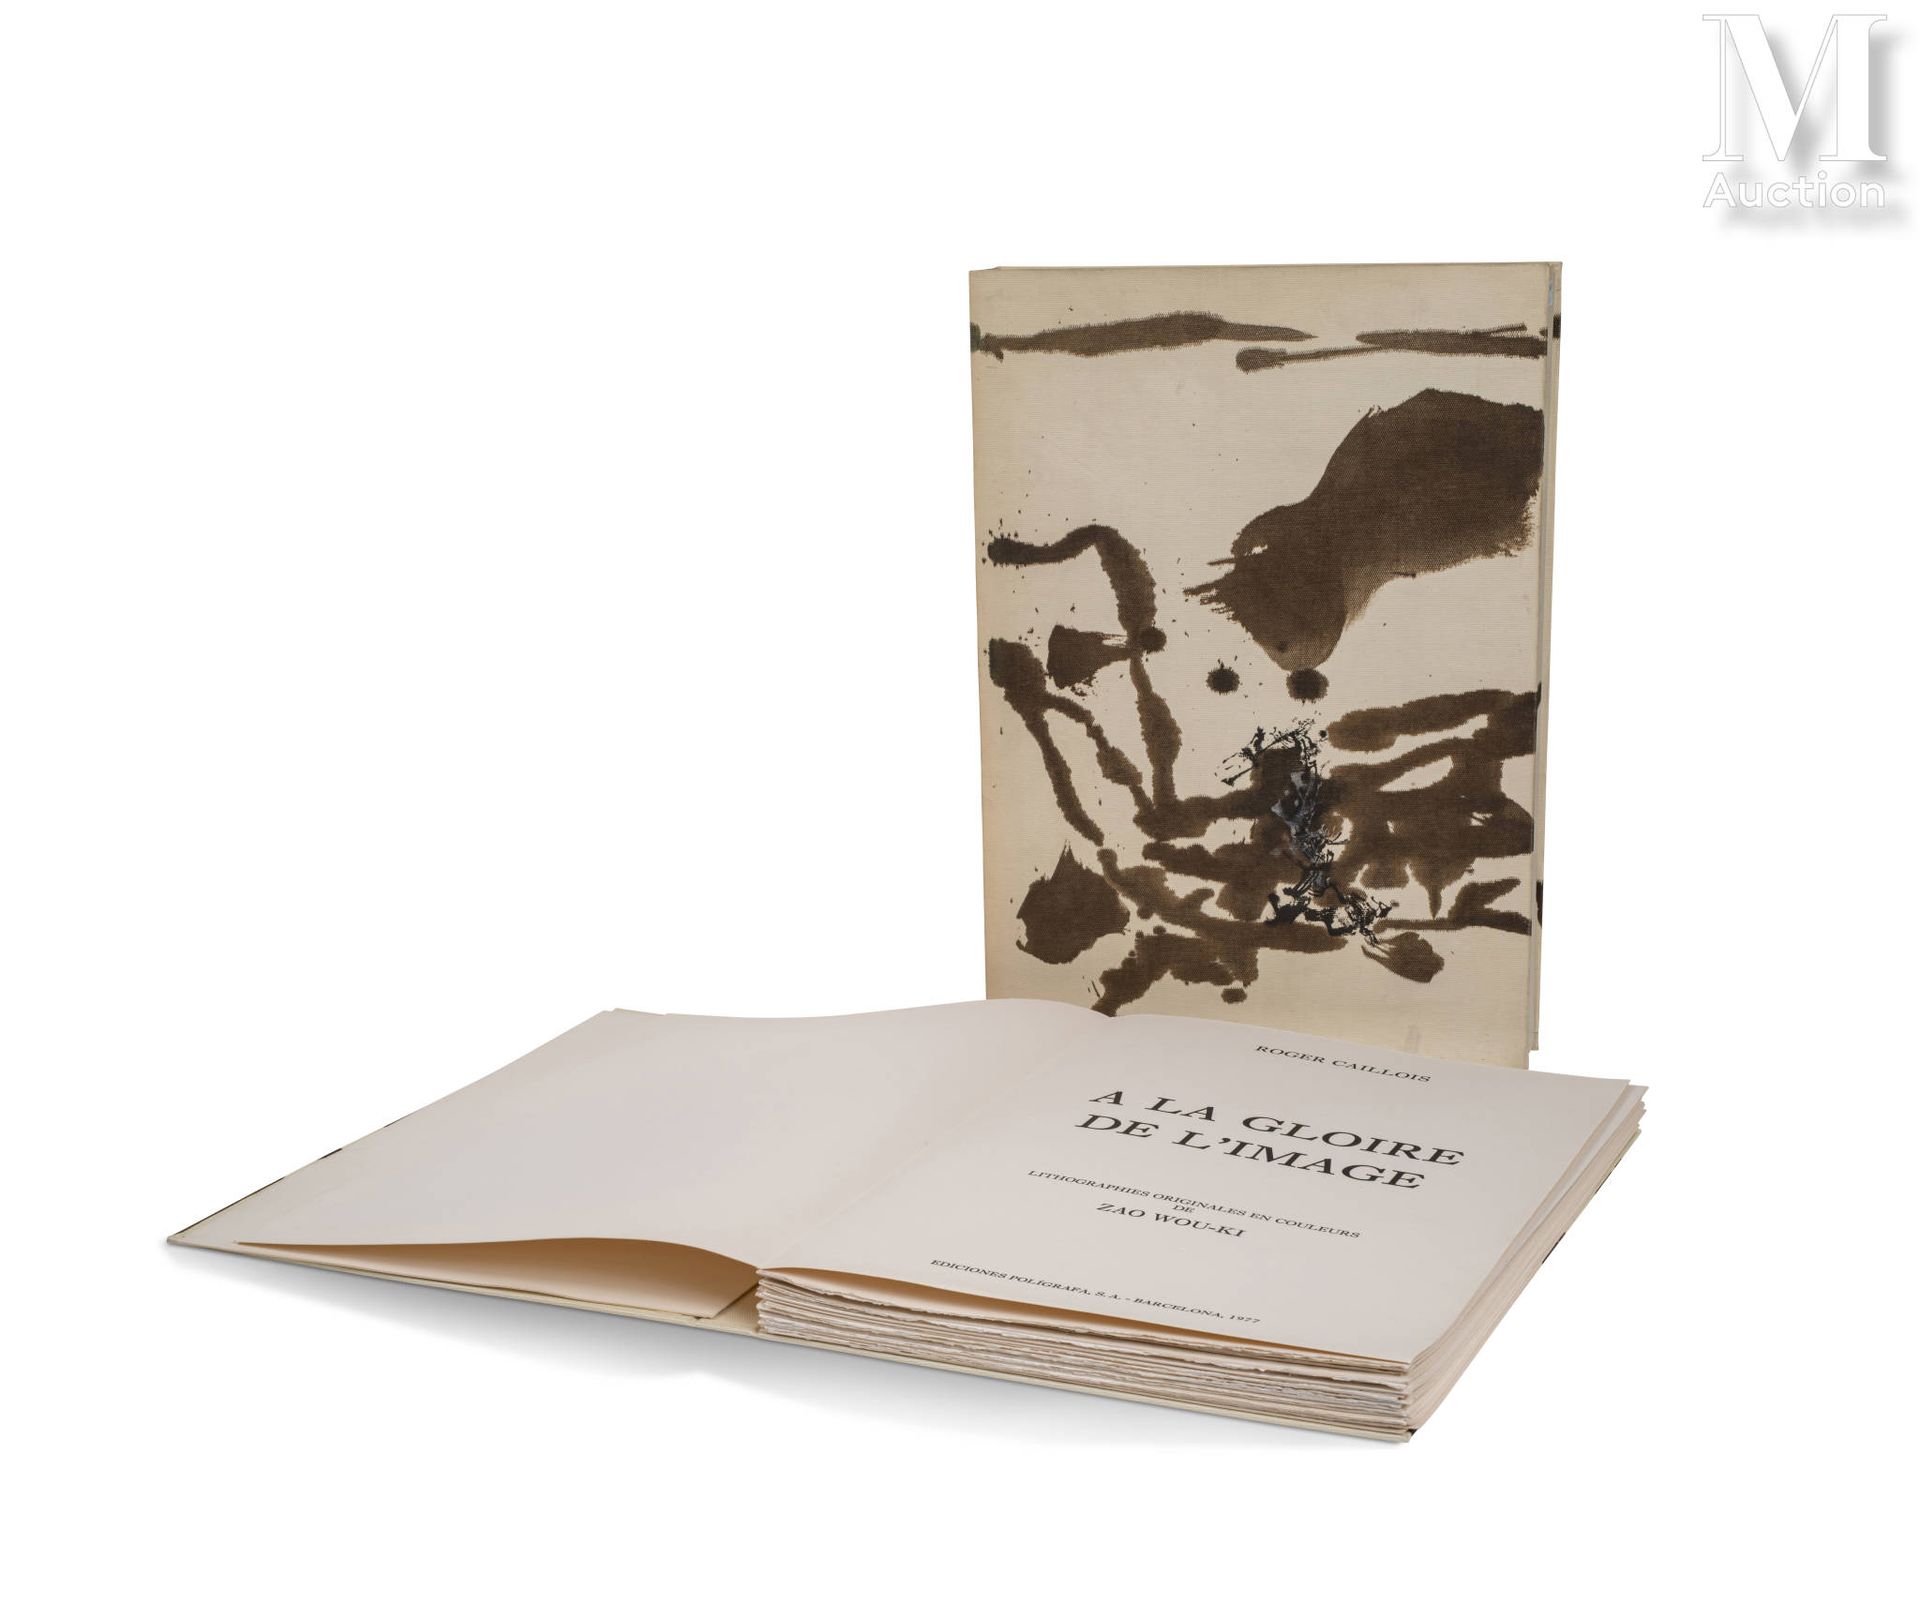 ZAO WOU-KI (1920-2013) A la gloire de l'image and Art poétique, 1976年

全套15幅彩色石版&hellip;